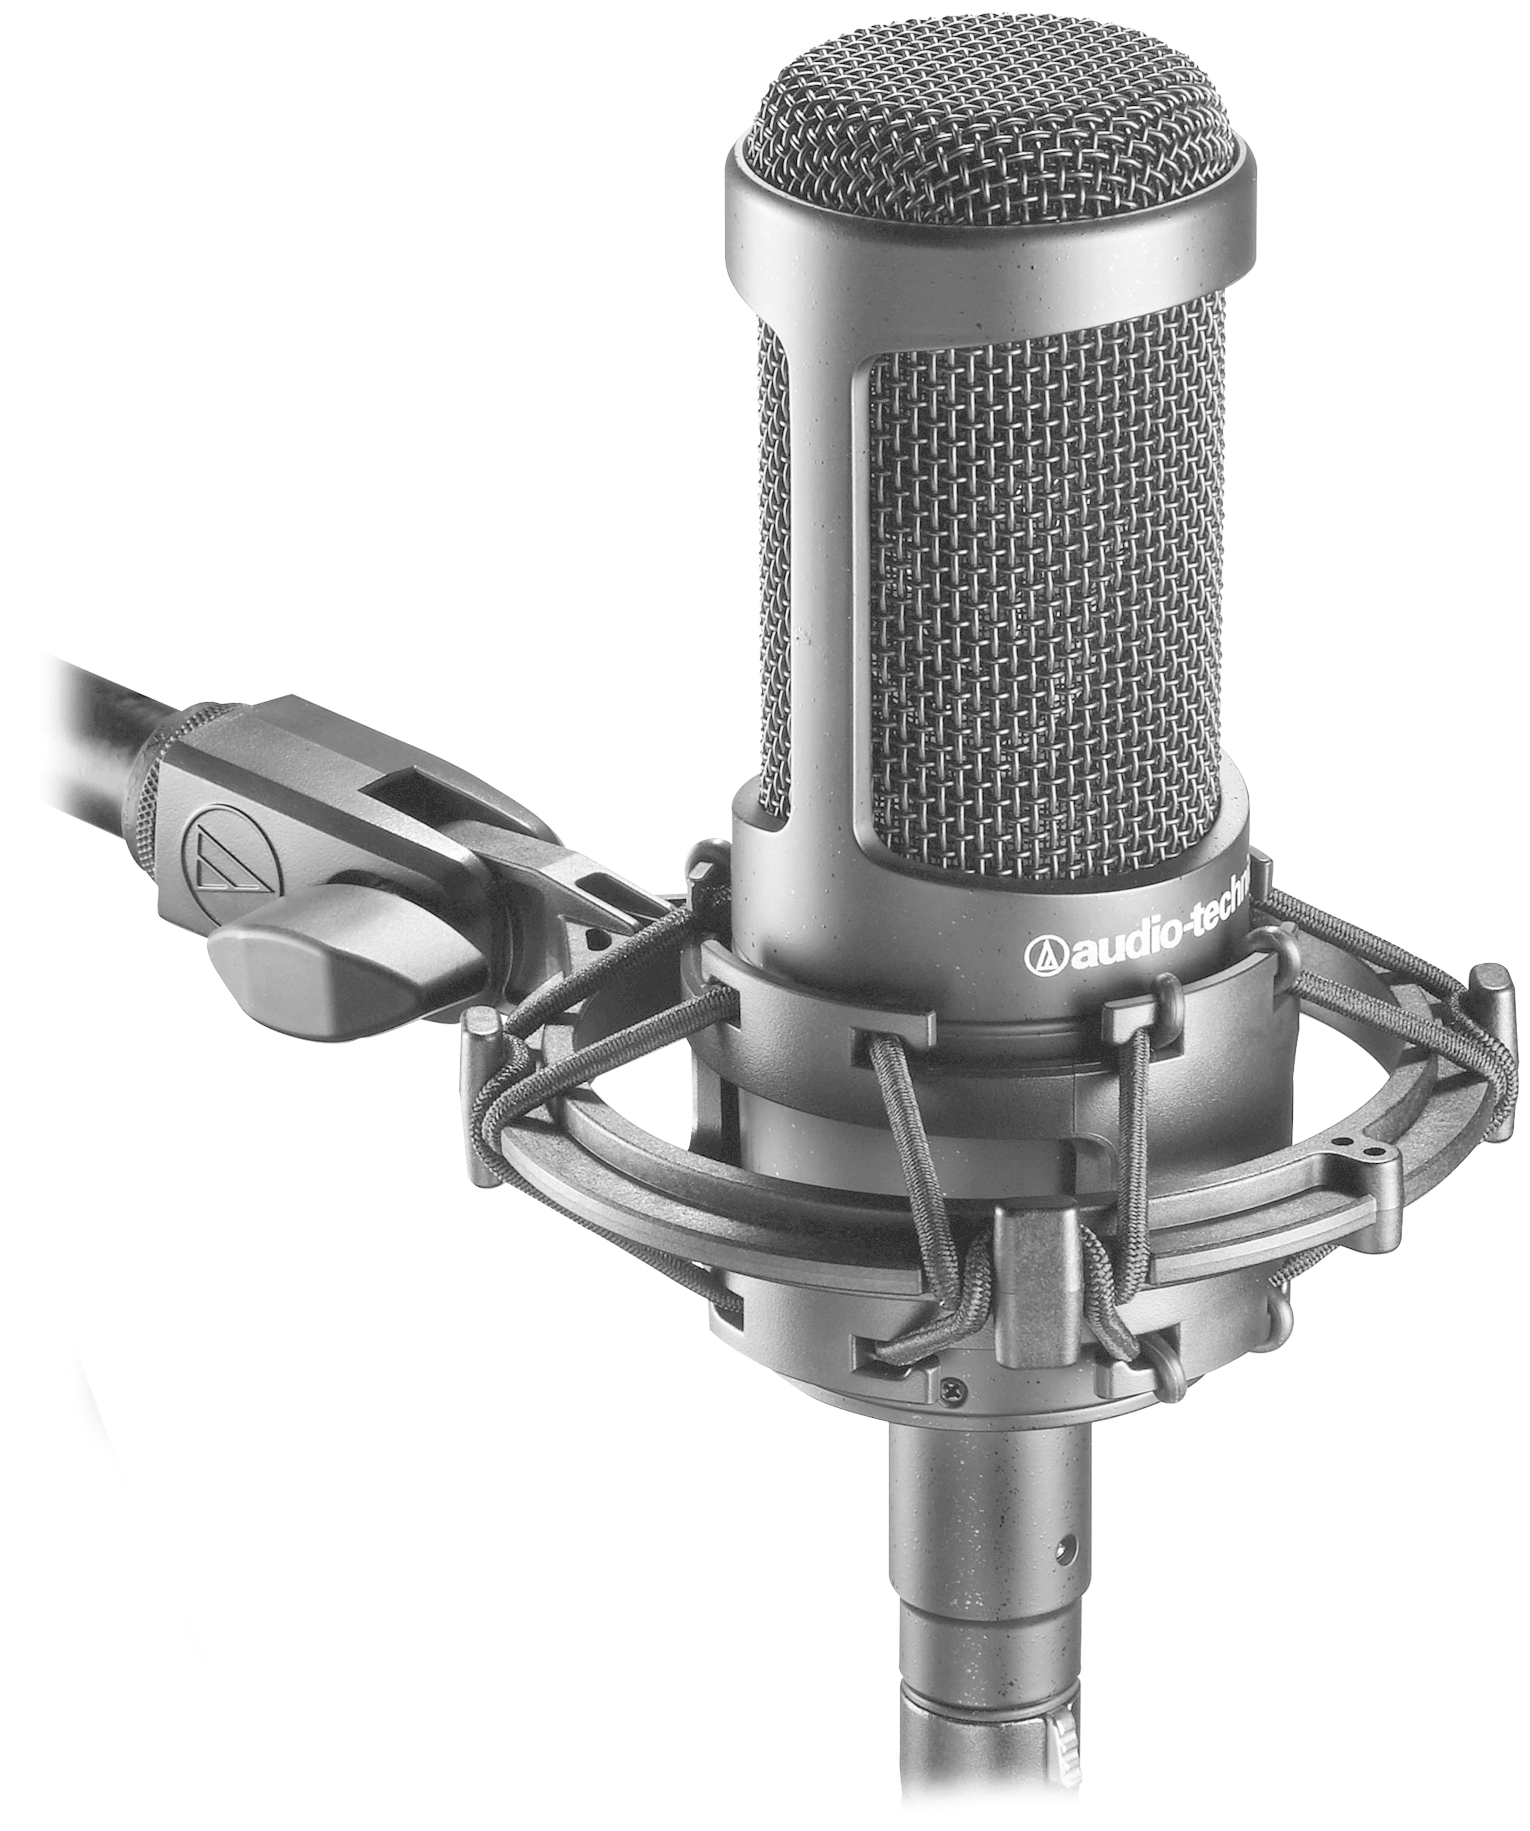 Студийные микрофоны Audio Technica - фото №10